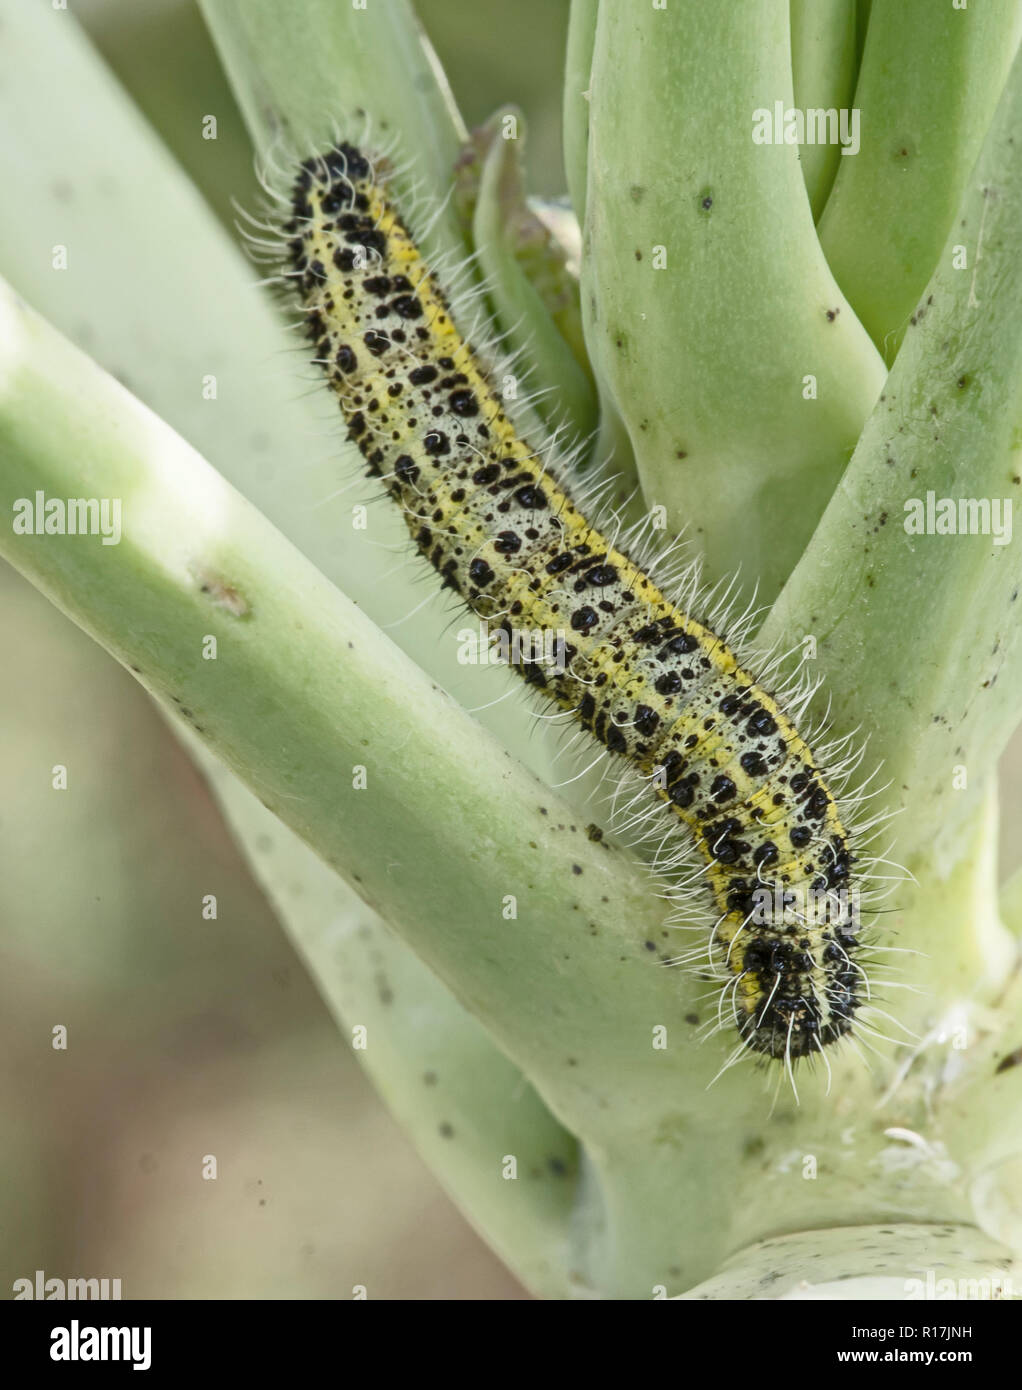 Caterpillar Larve des Kohlweißling Pieris brassicae, essen die Blätter einer Kohl. Unseasonal Klima und Wetter - Foto November 2018. Stockfoto